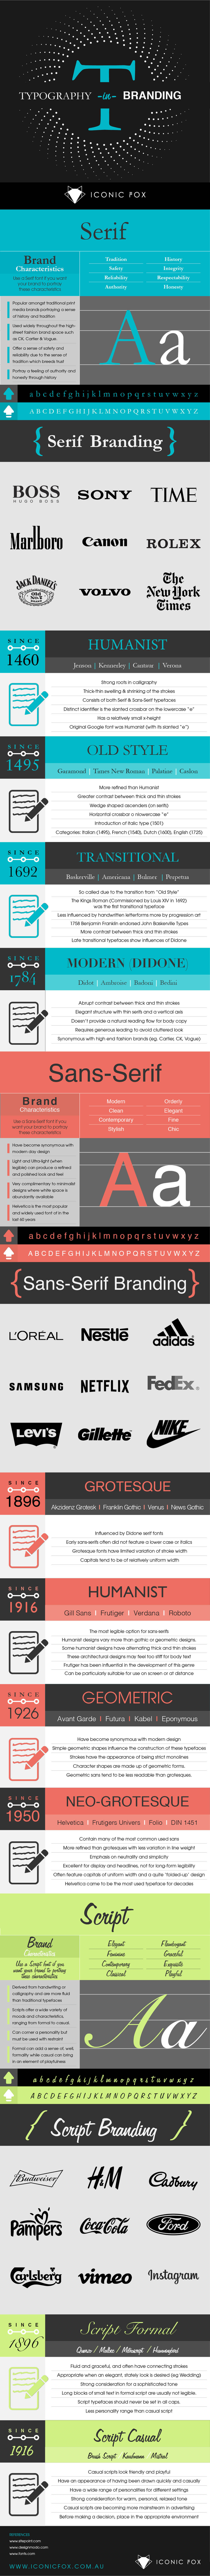 [INFOGRAPHIC] Lựa chọn font chữ phù hợp với thương hiệu